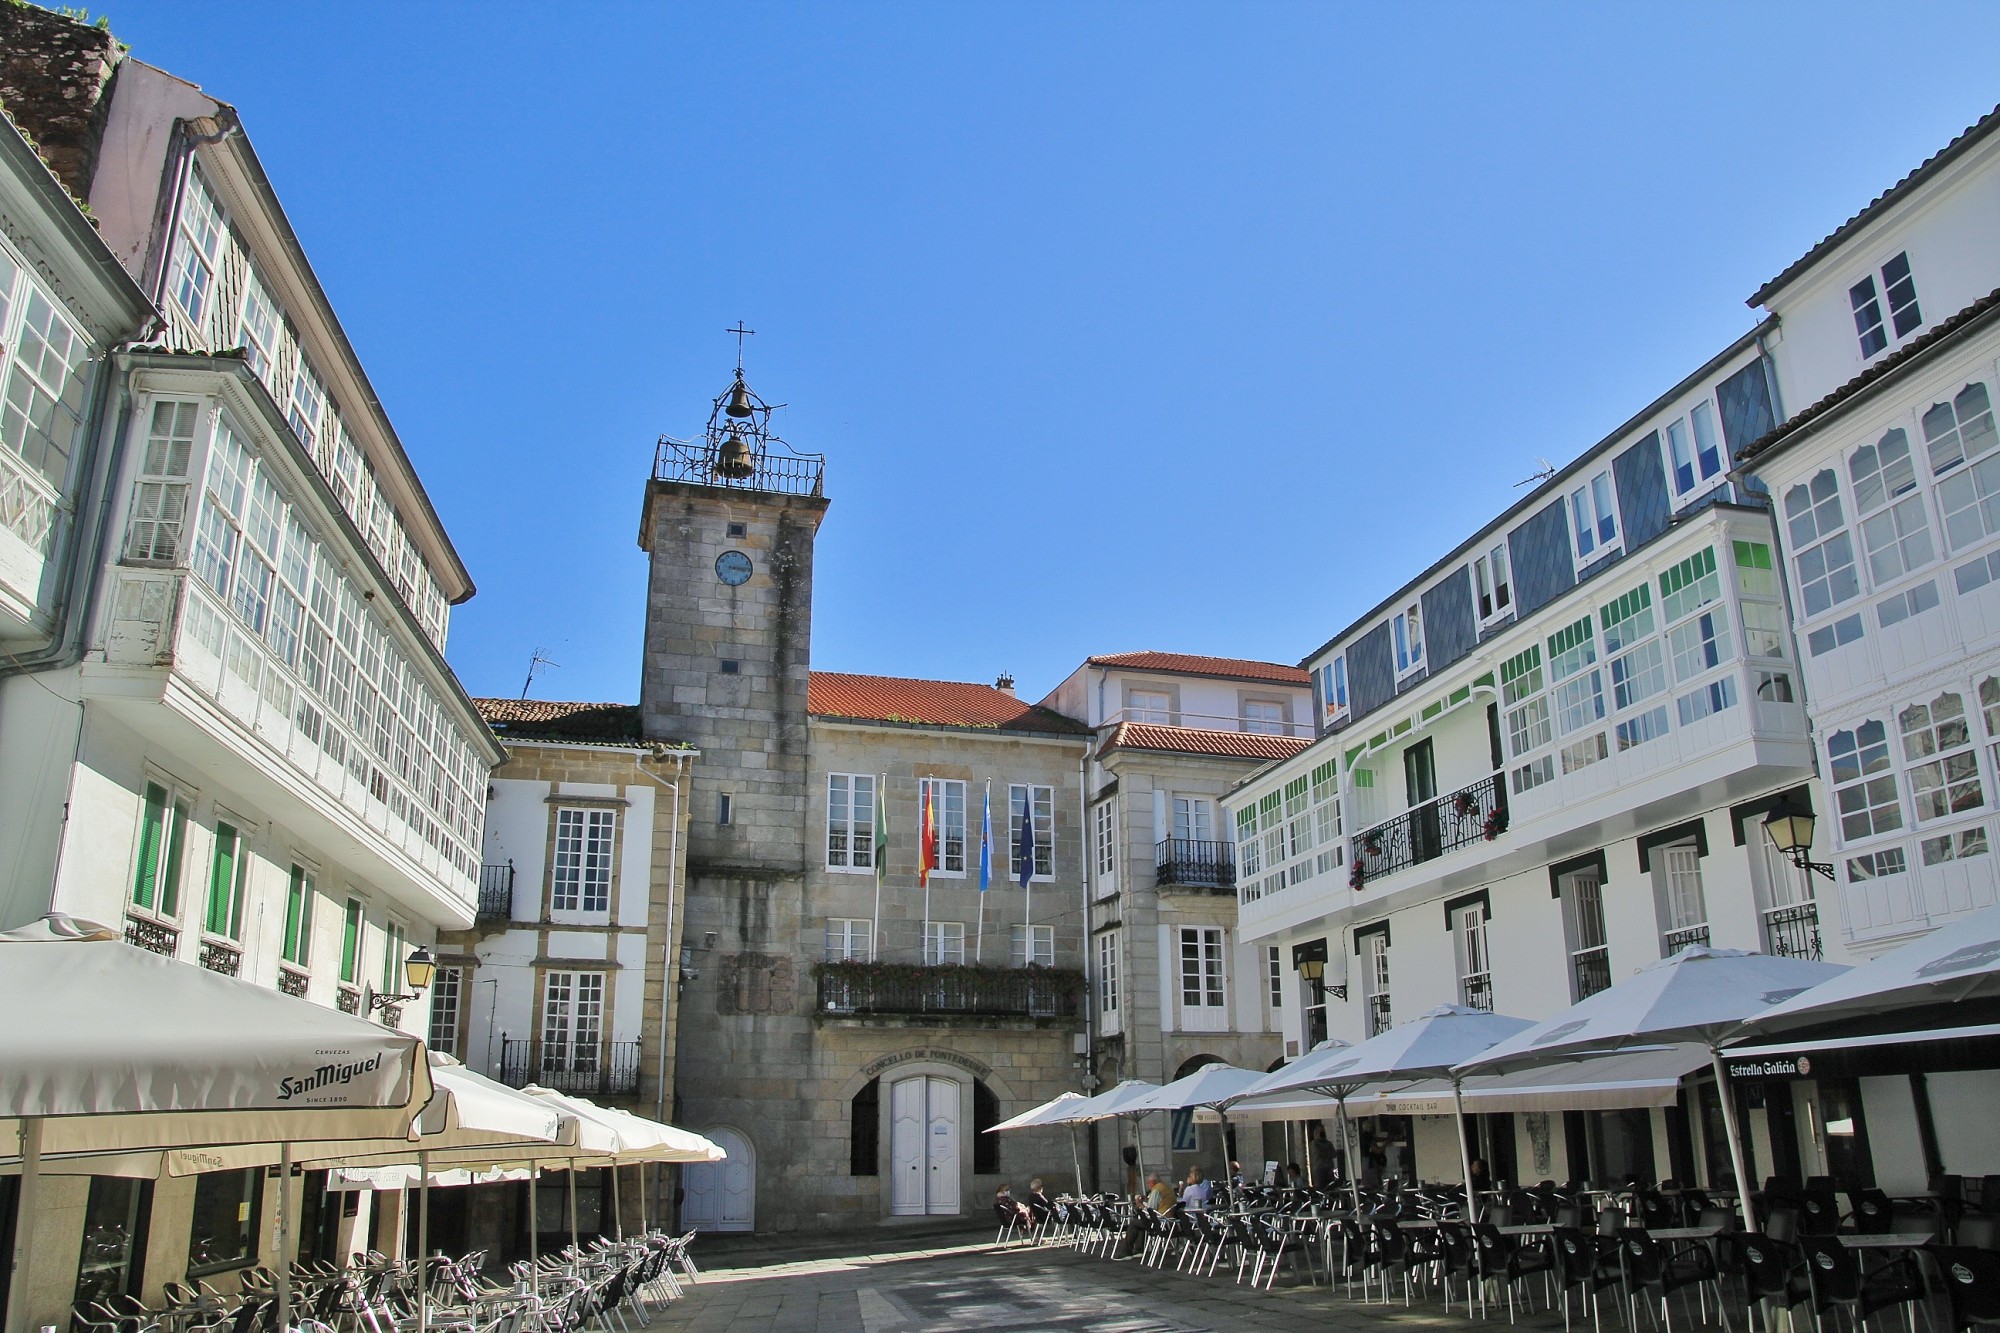 Foto: Centro histórico - Pontedeume (A Coruña), España